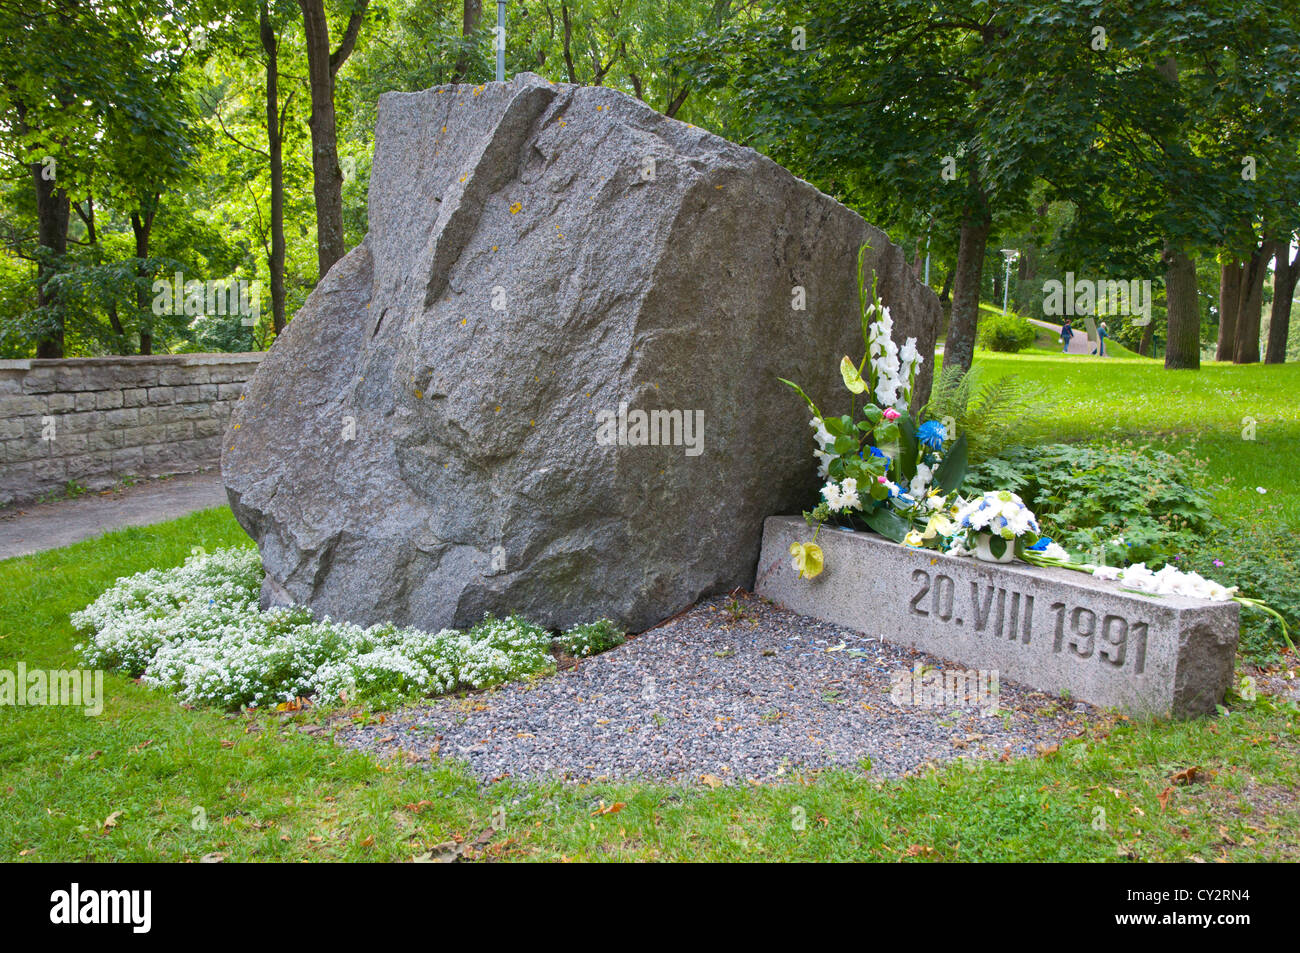 Lapide commemorativa per il 20 agosto 1991 quando l'Estonia si è staccata dalla ex Unione Sovietica nel parco Toompark Tallinn Estonia Foto Stock